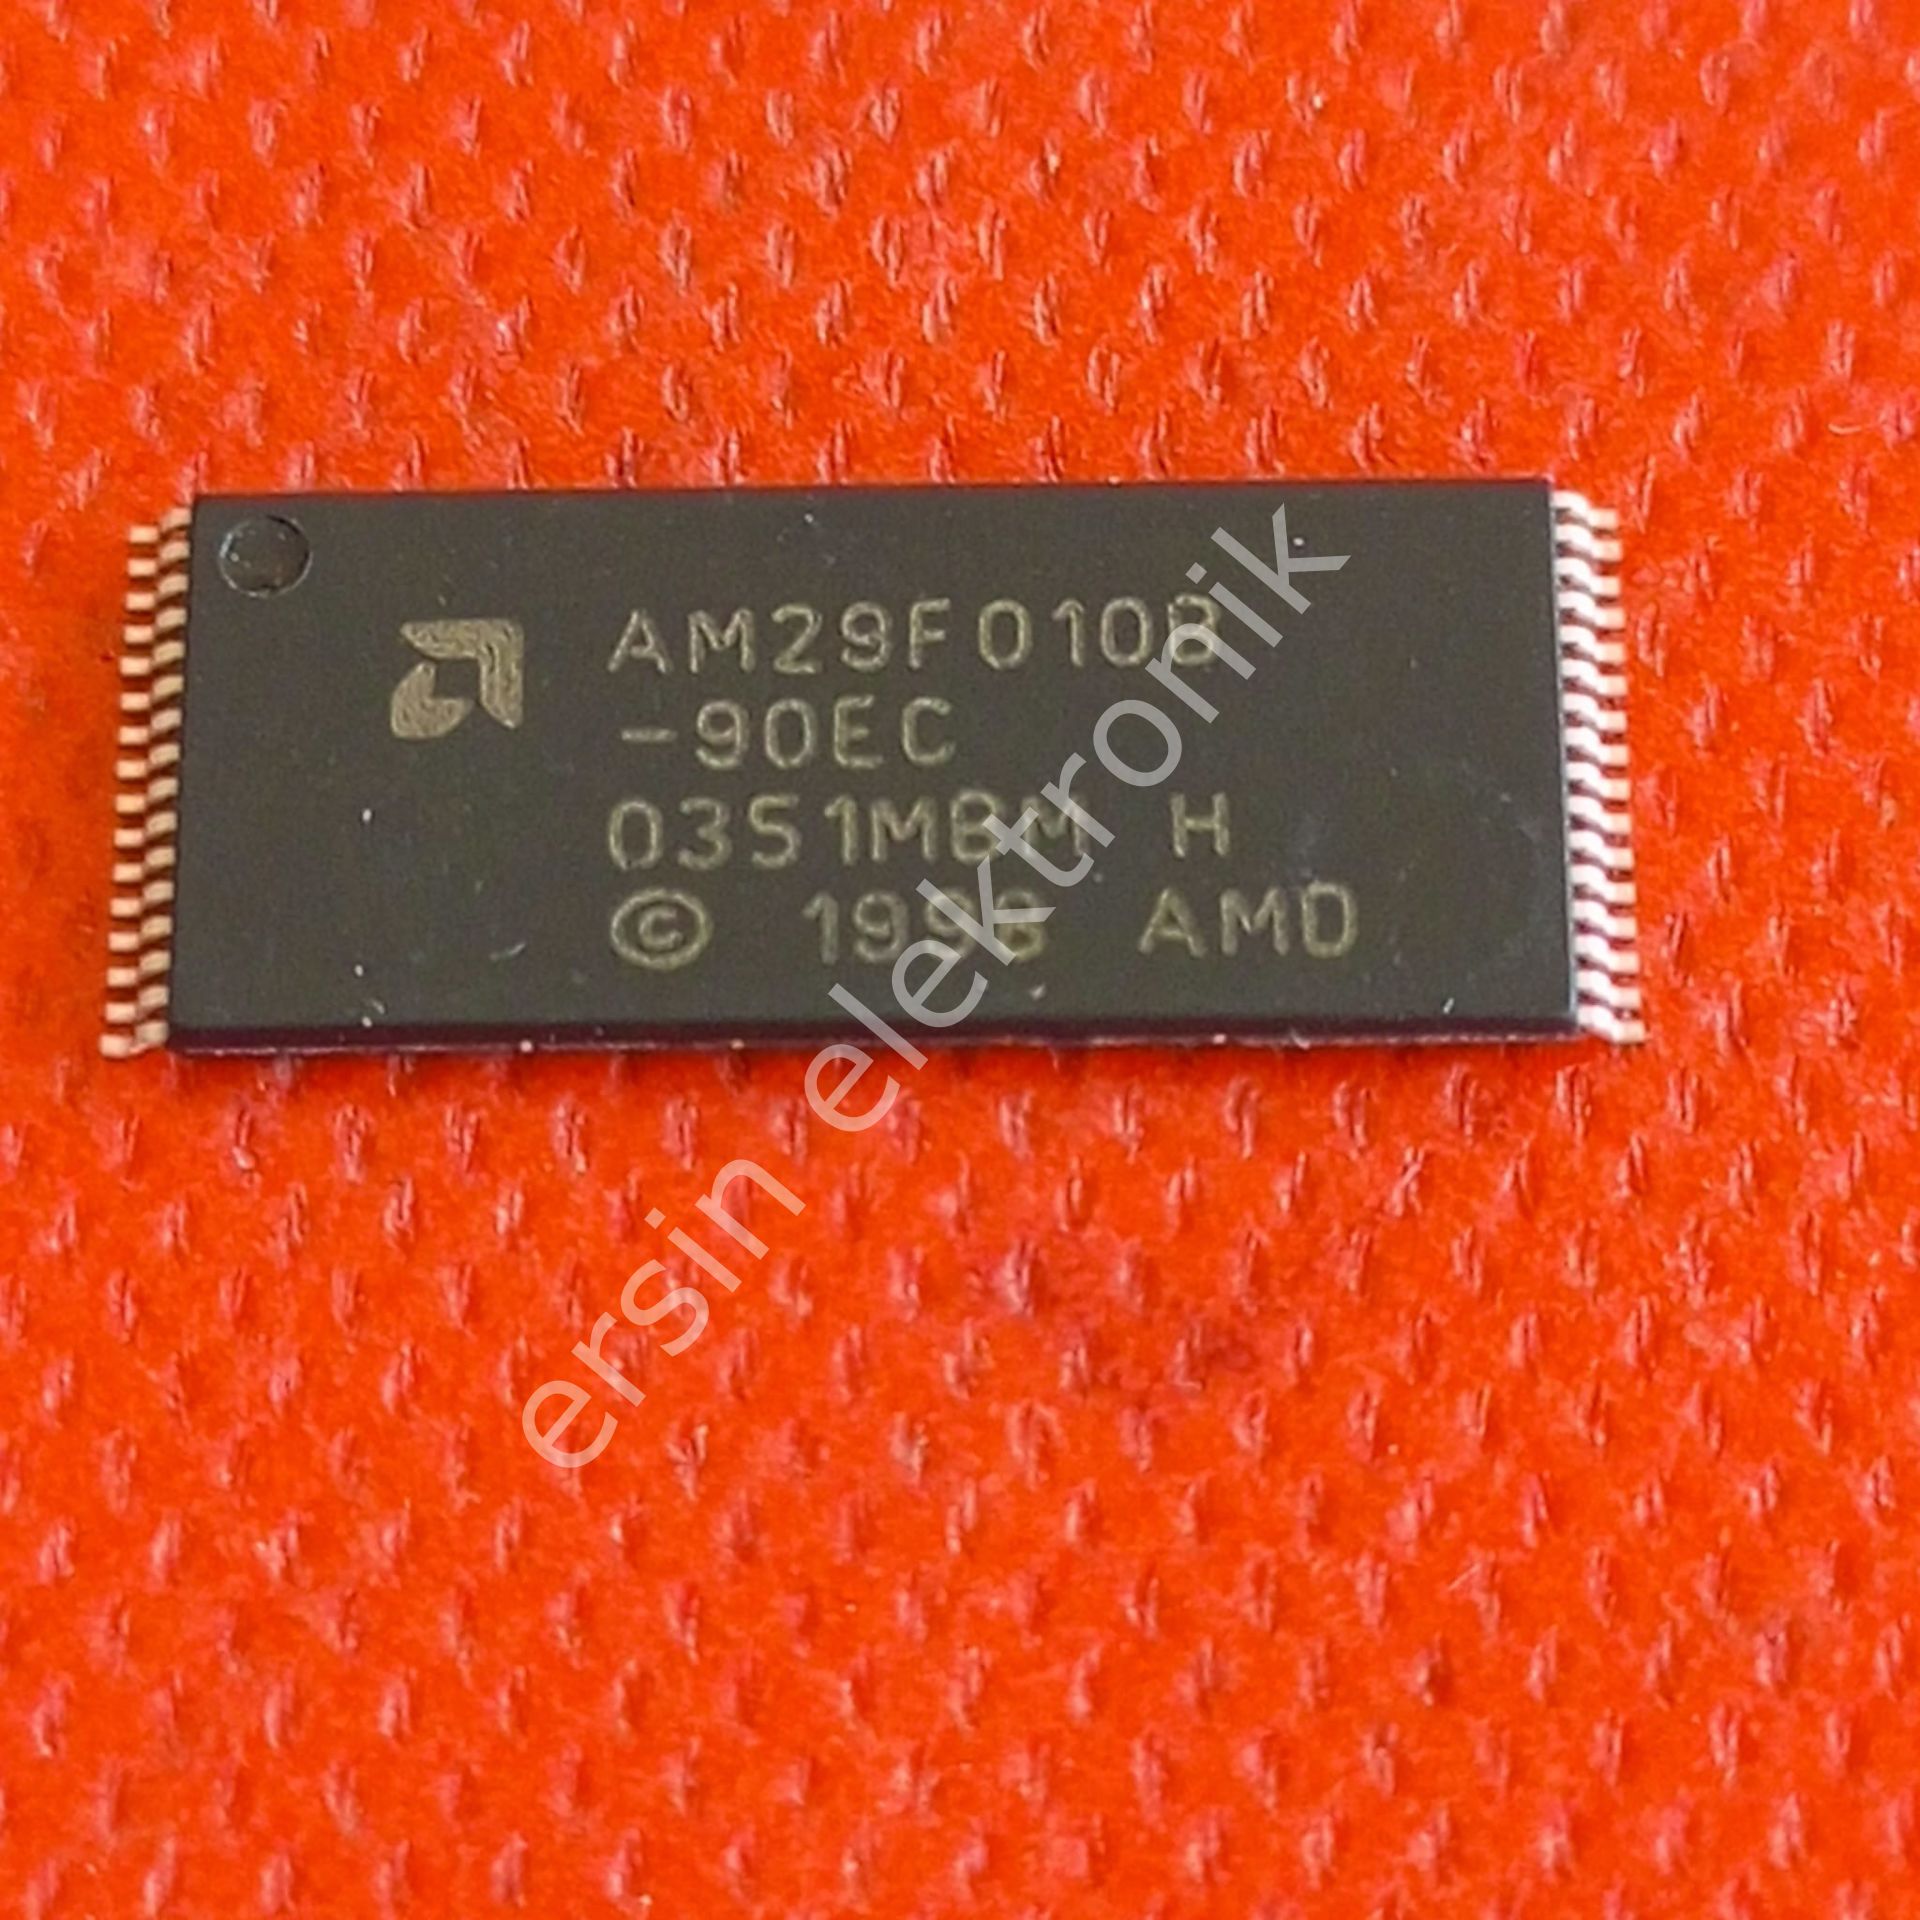 29F010 SMD (AM29F010B-90EC)